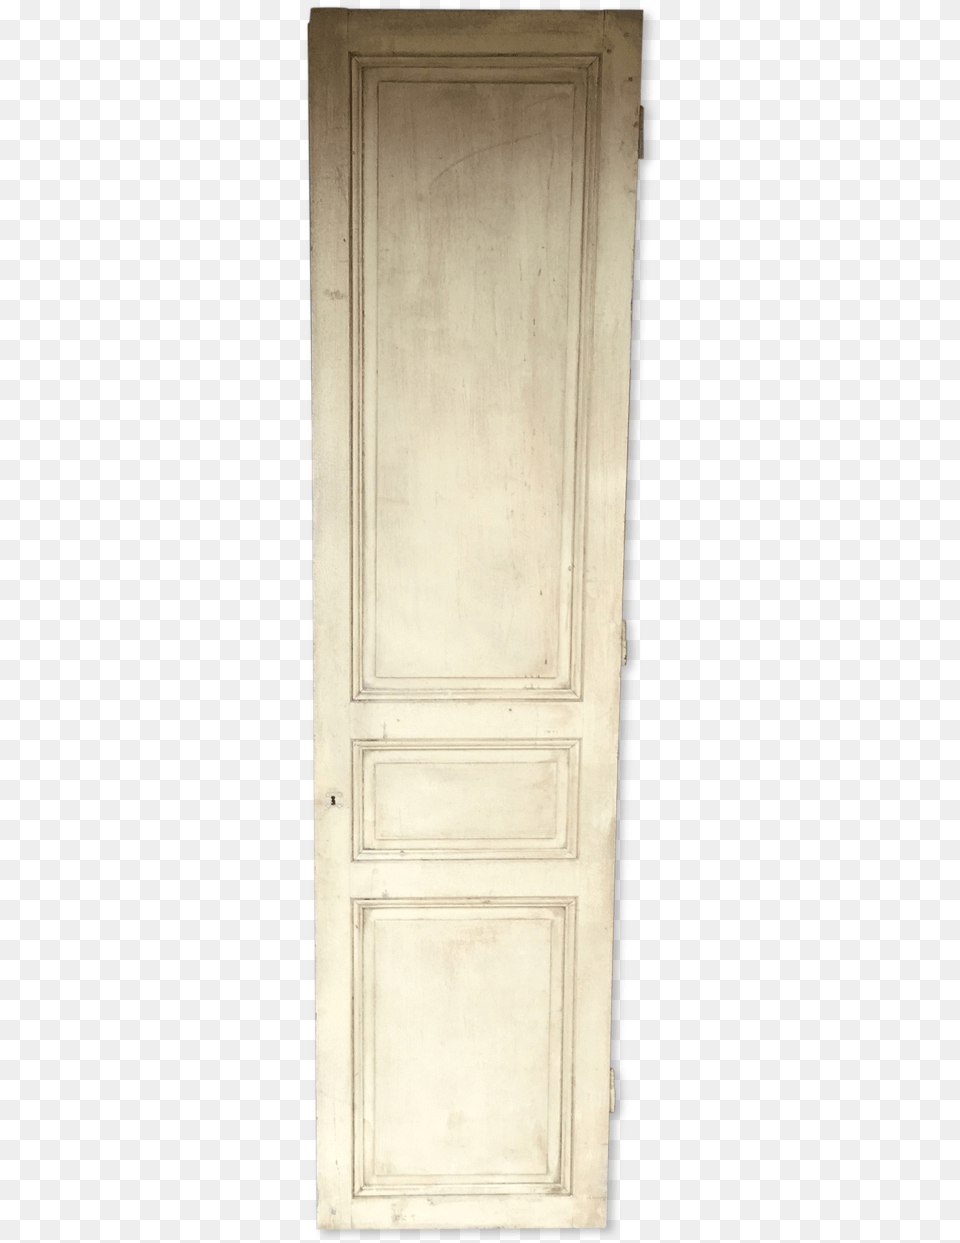 Home Door, Closet, Cupboard, Furniture Png Image